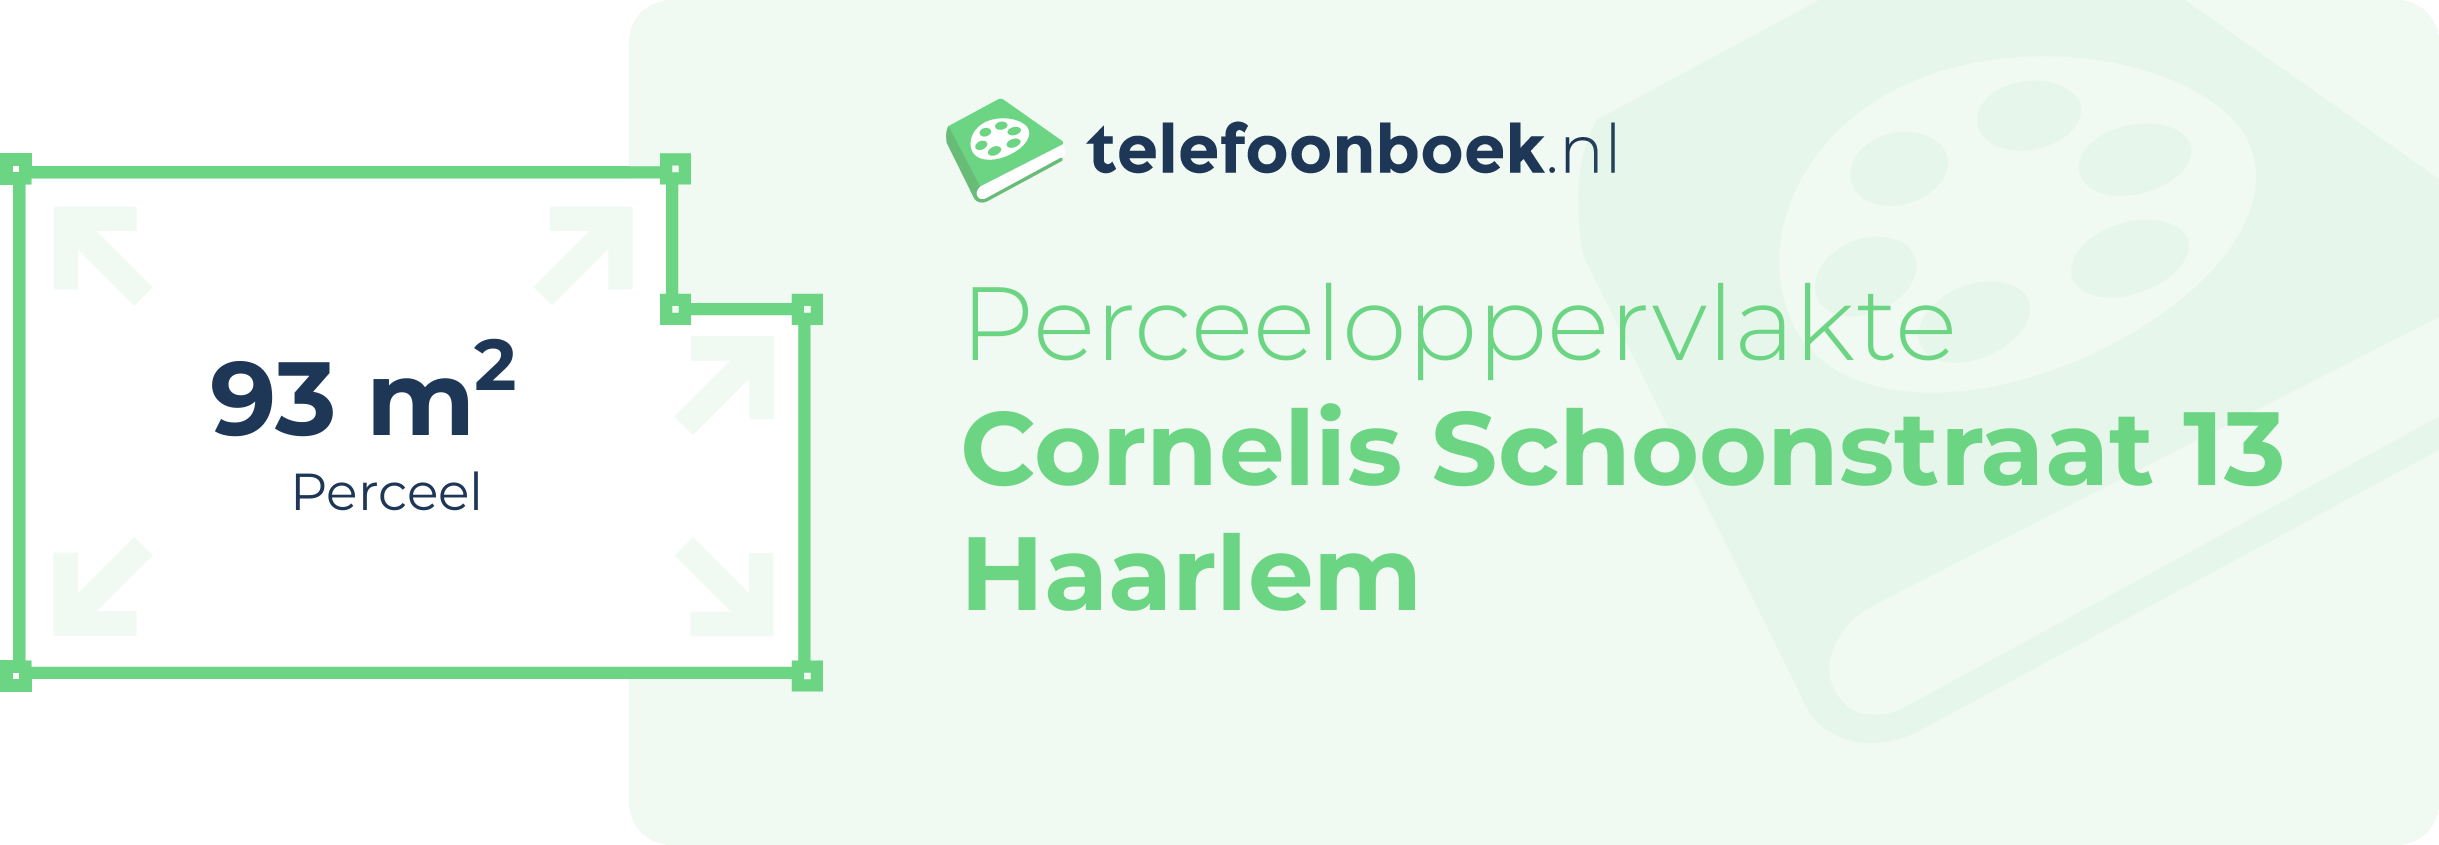 Perceeloppervlakte Cornelis Schoonstraat 13 Haarlem